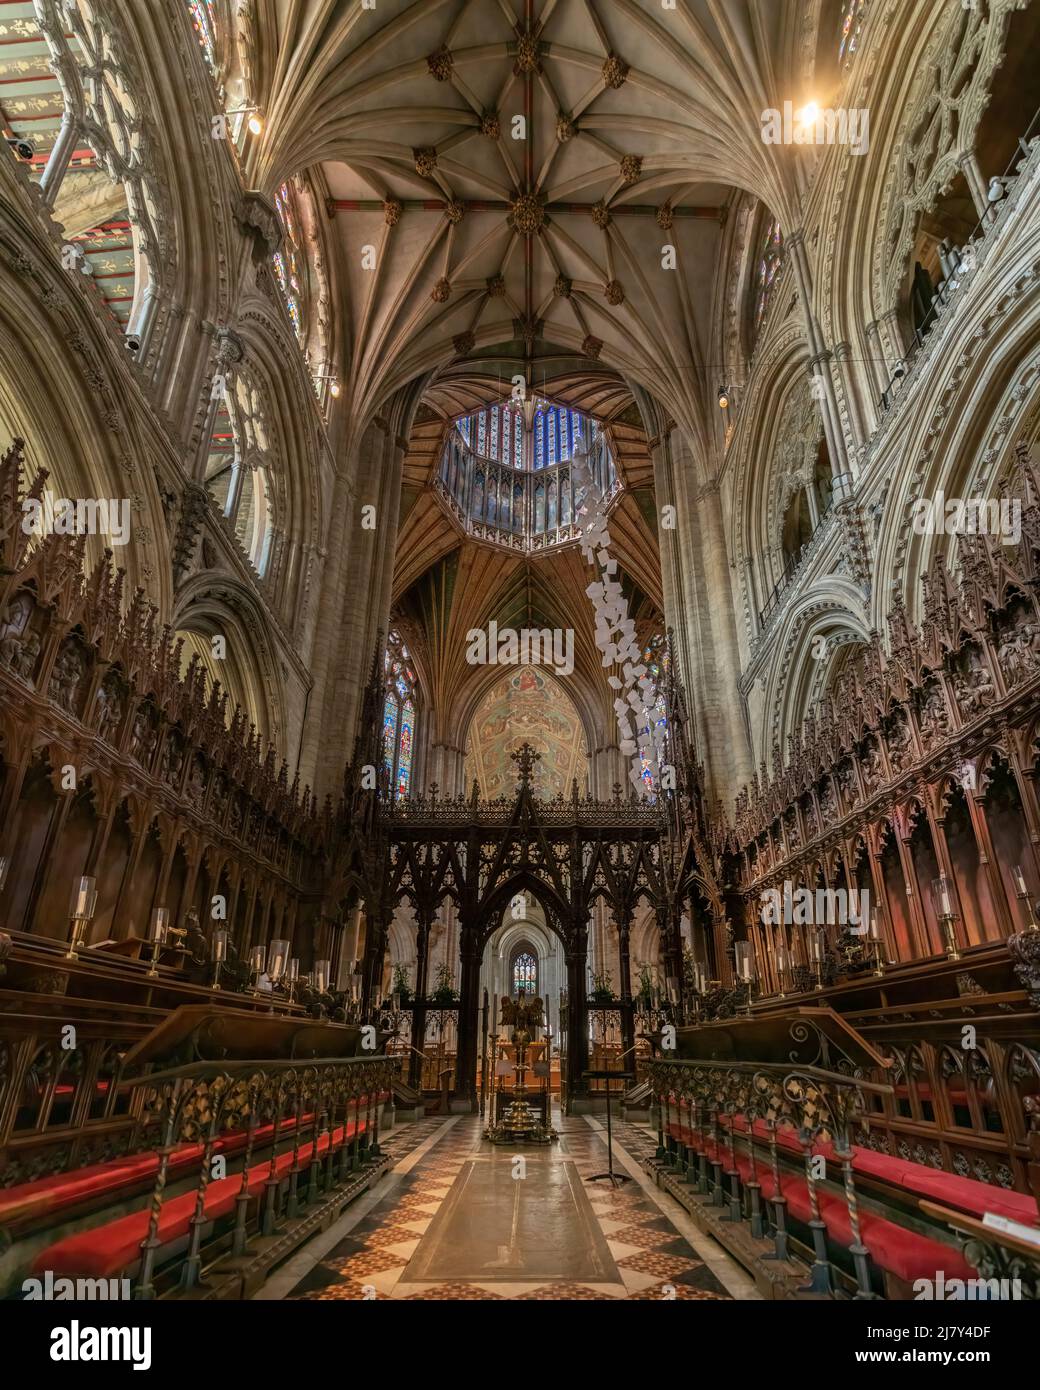 Le chœur s'étals, rood en bois sculpté, la tour Octagon et la Lanterne de la cathédrale d'Ely Banque D'Images